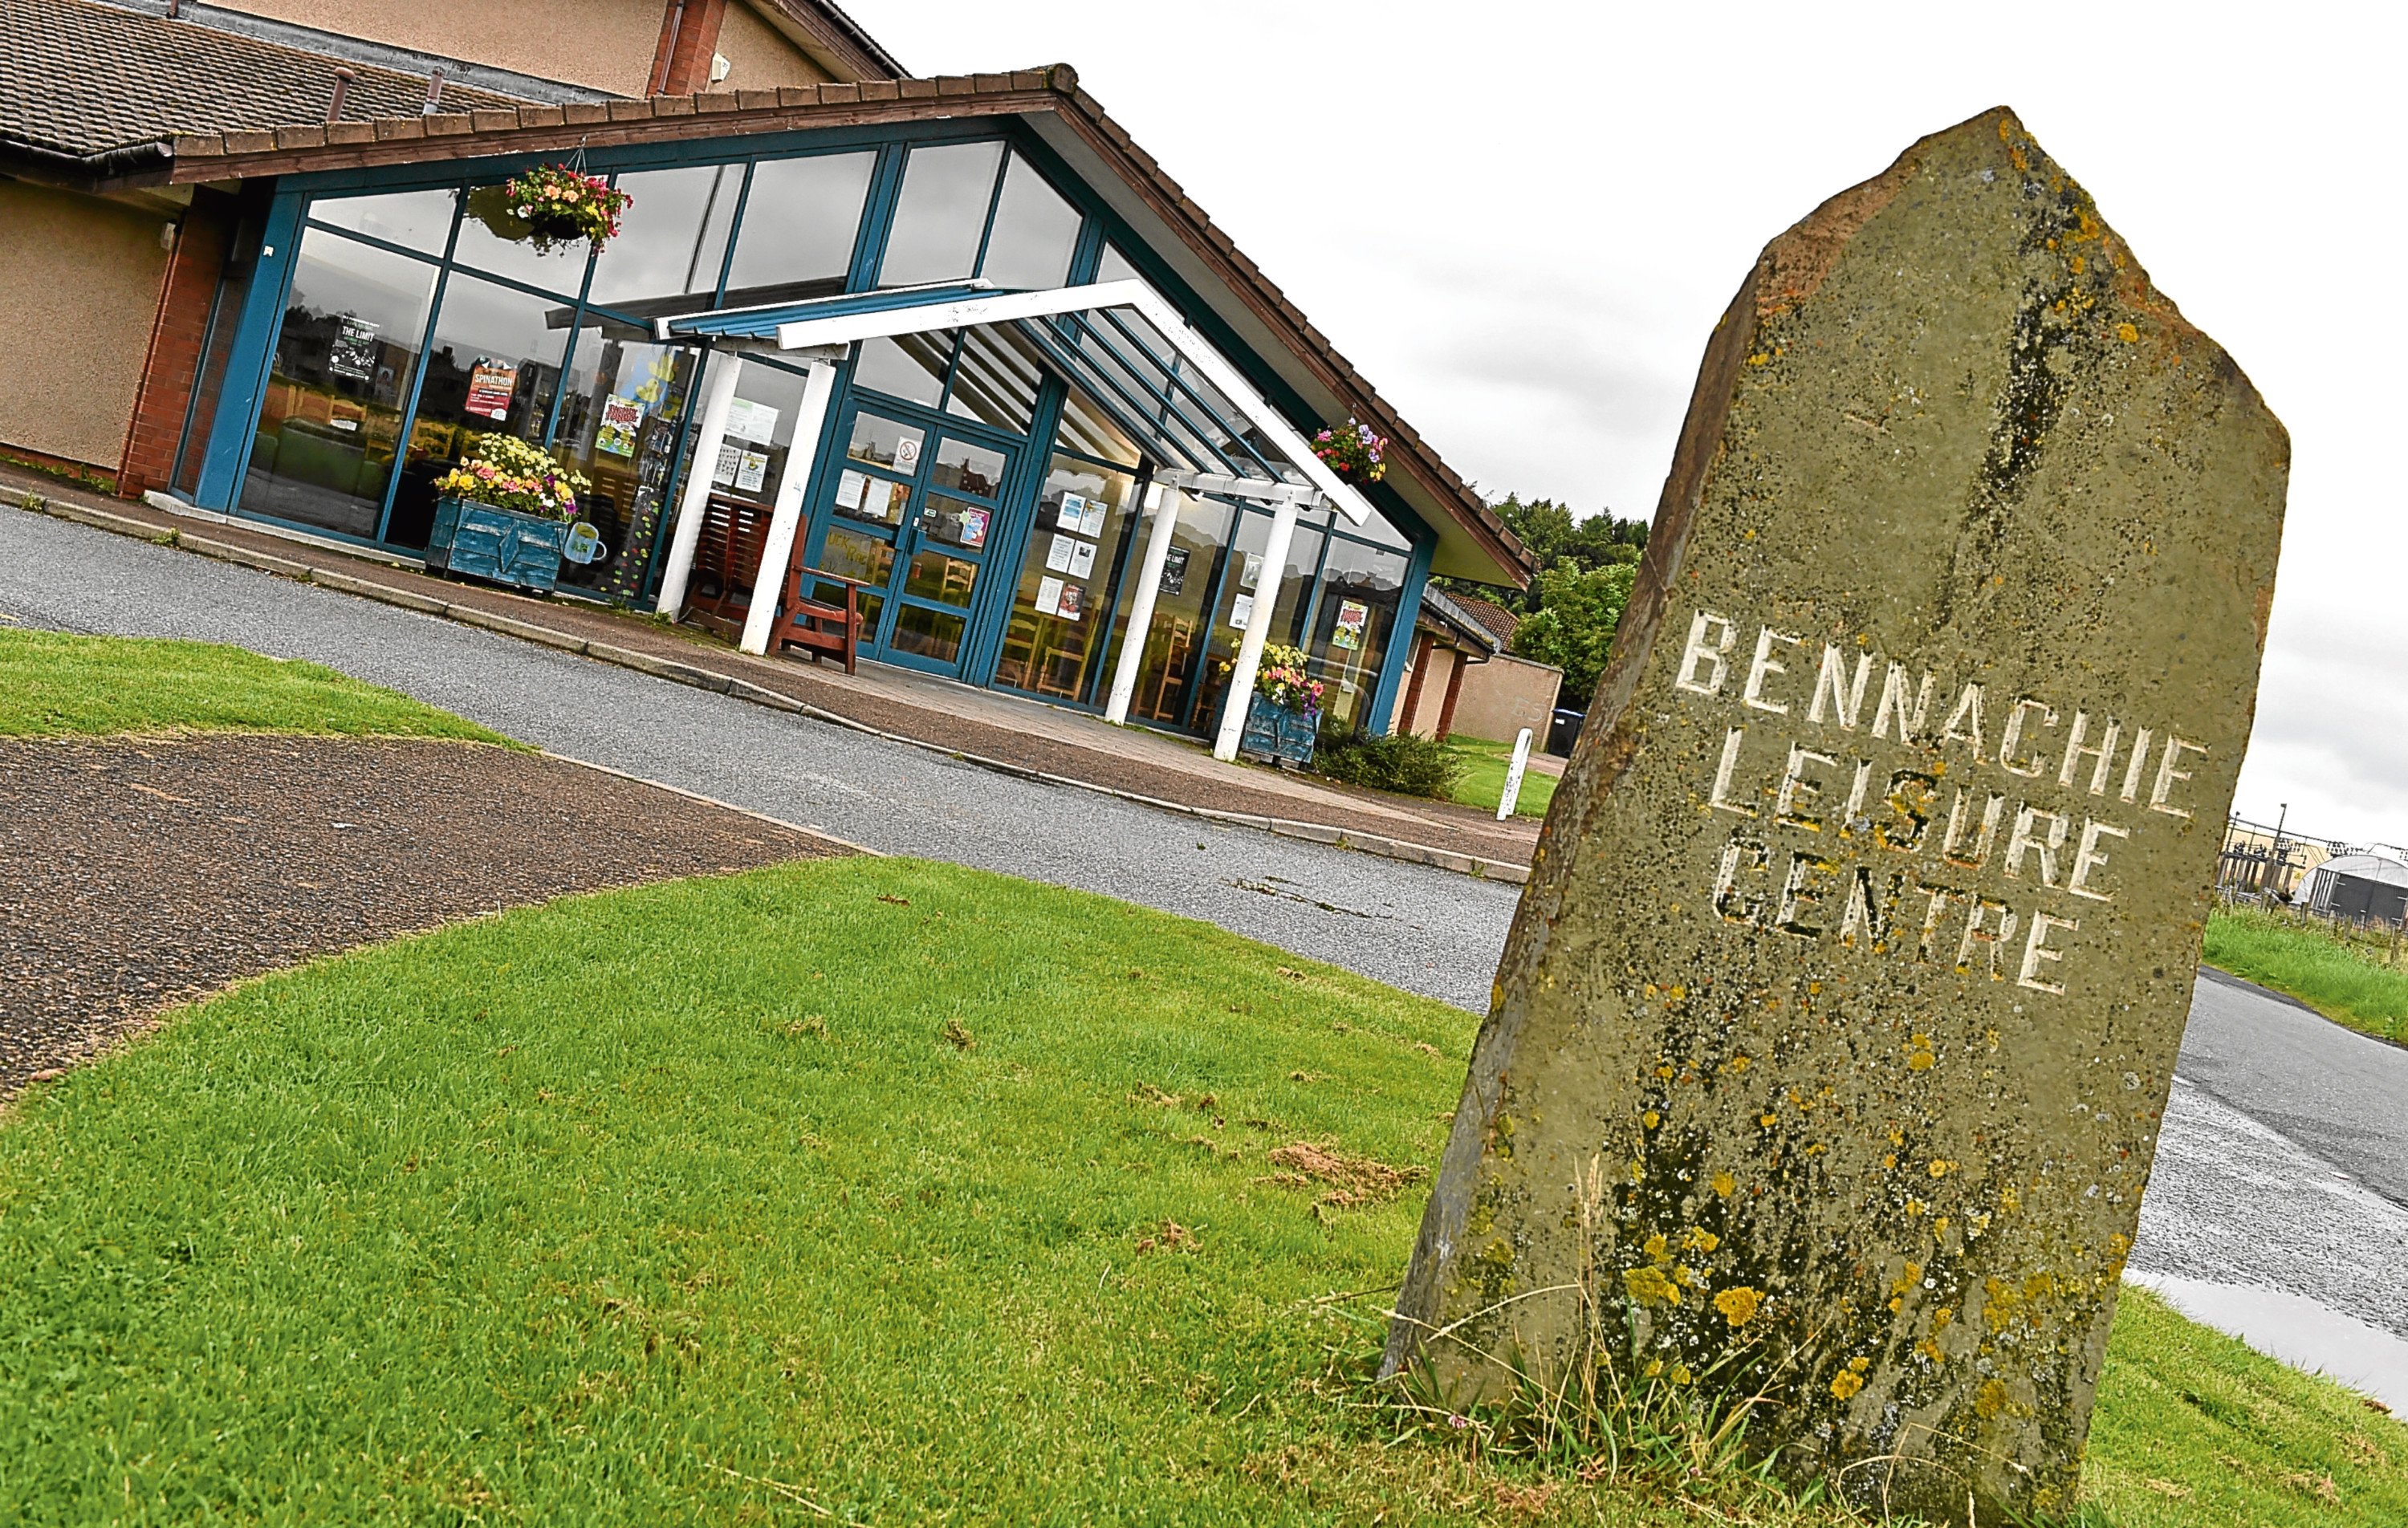 The Bennachie Leisure Centre